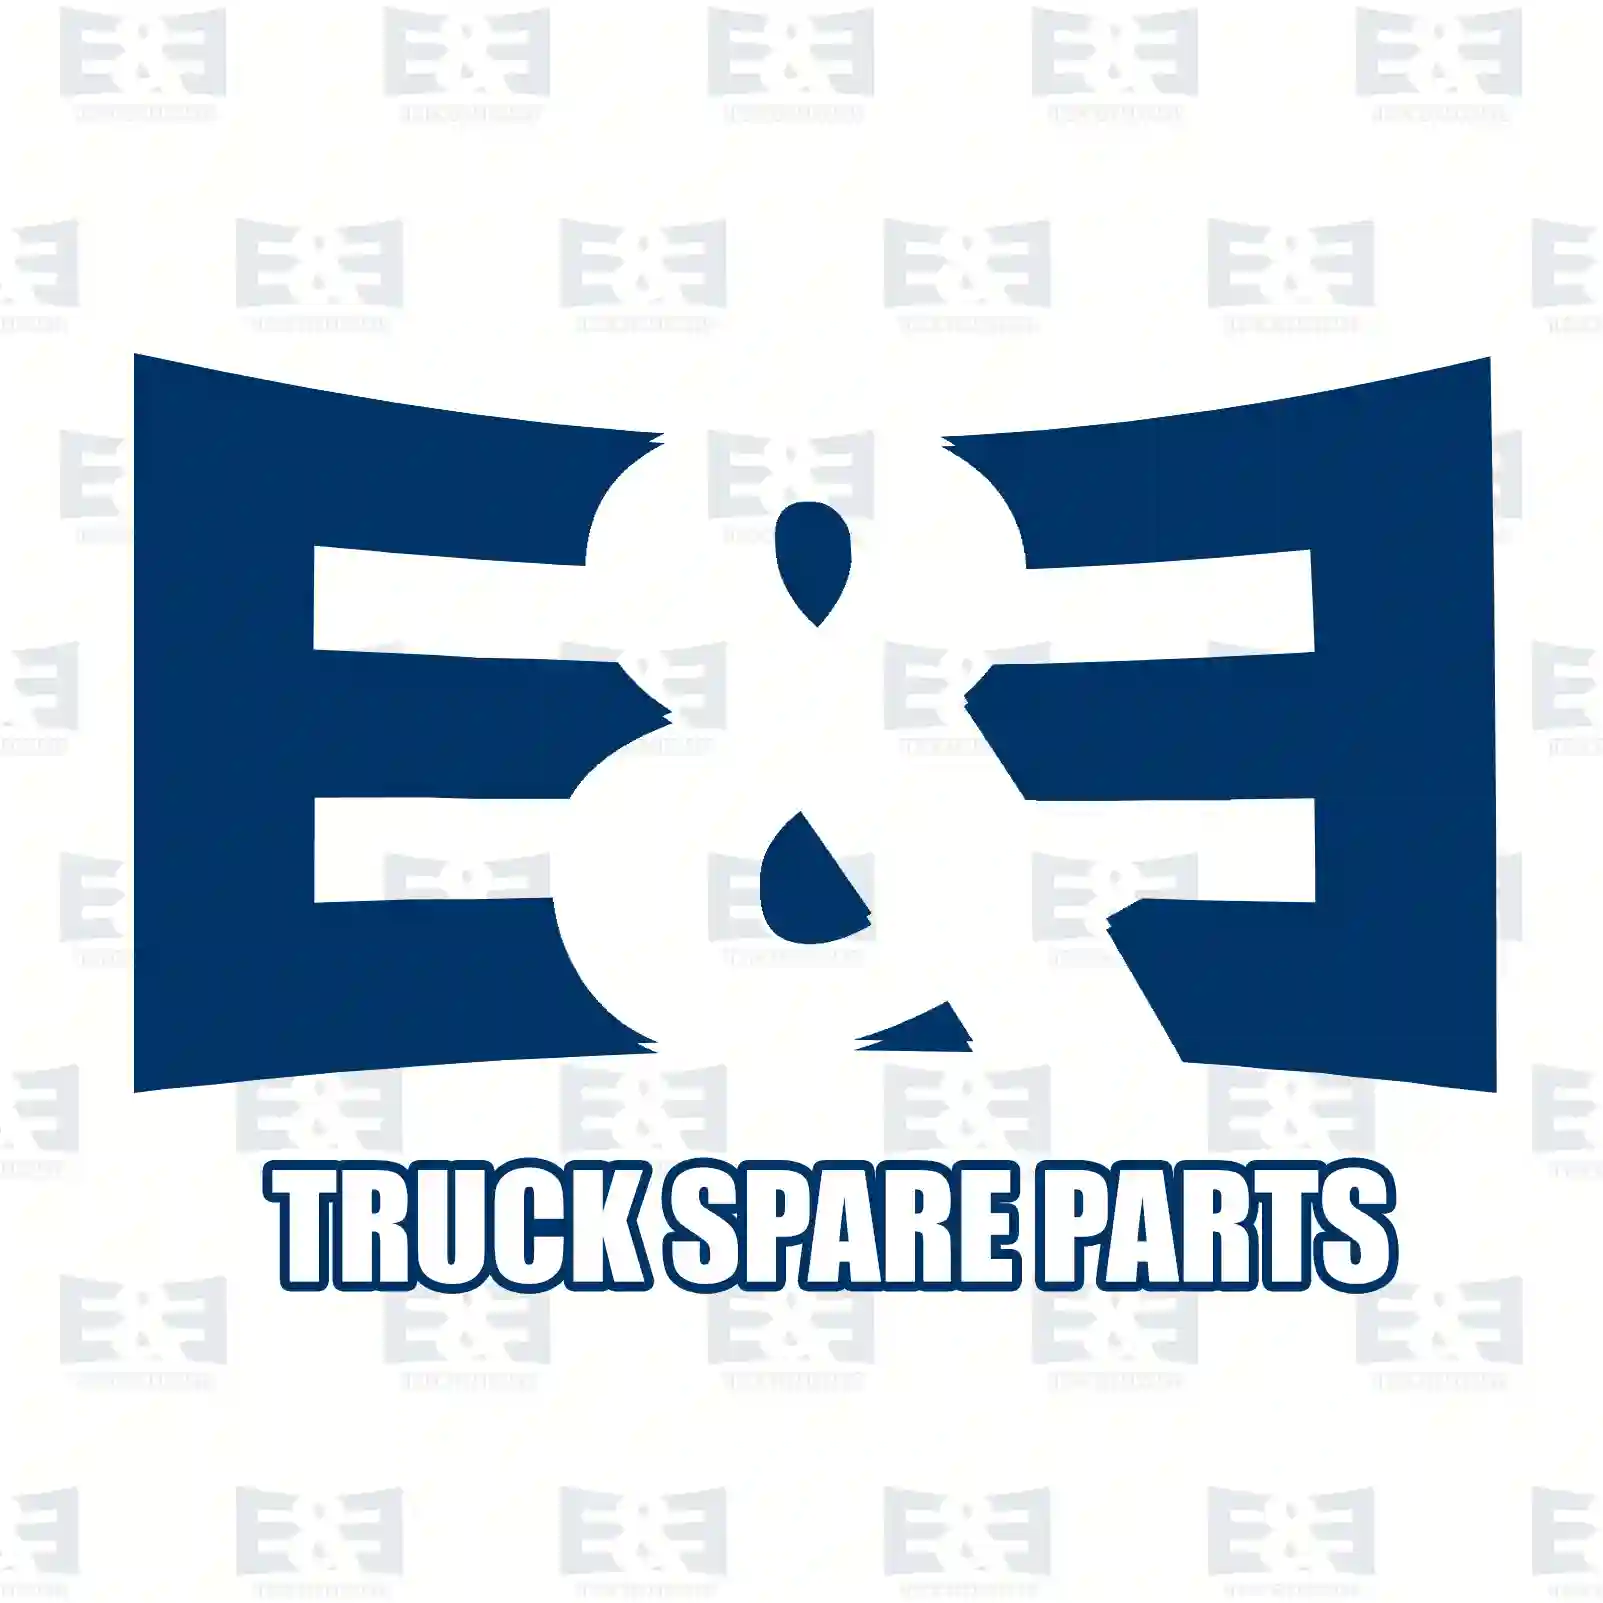 Injection line kit, 2E2286044, 4220706333S2, 4220706433S2, 4220706533S2, 4220706633S2, 4410702533S1, 4410702633S1, 4410702733S1, 4420706133S1 ||  2E2286044 E&E Truck Spare Parts | Truck Spare Parts, Auotomotive Spare Parts Injection line kit, 2E2286044, 4220706333S2, 4220706433S2, 4220706533S2, 4220706633S2, 4410702533S1, 4410702633S1, 4410702733S1, 4420706133S1 ||  2E2286044 E&E Truck Spare Parts | Truck Spare Parts, Auotomotive Spare Parts